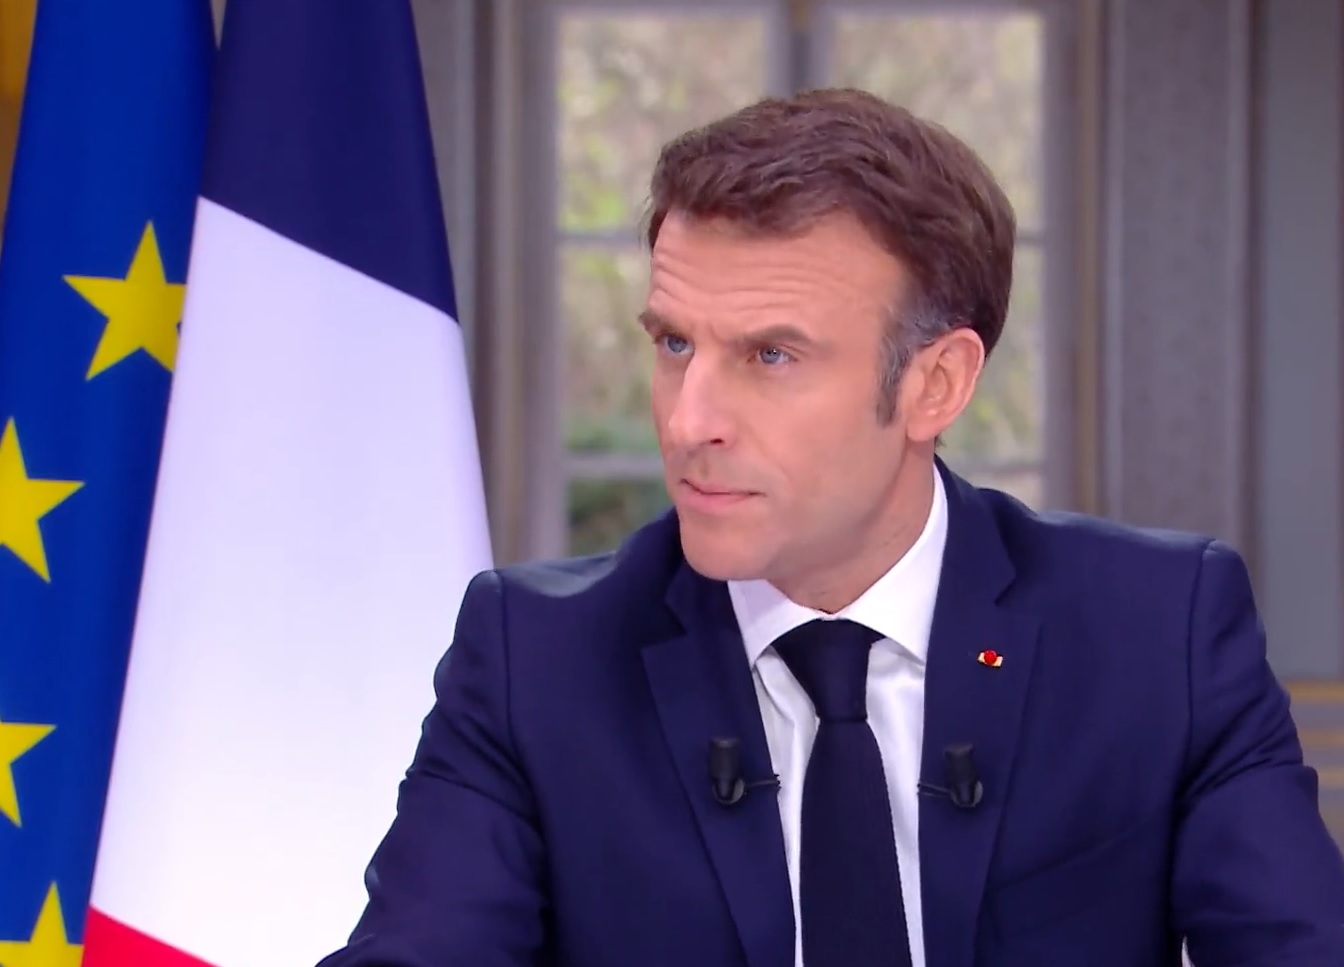 Declaração de Macron ocorreu durante entrevista na TV - Foto: Reprodução/Twitter @EmmanuelMacron